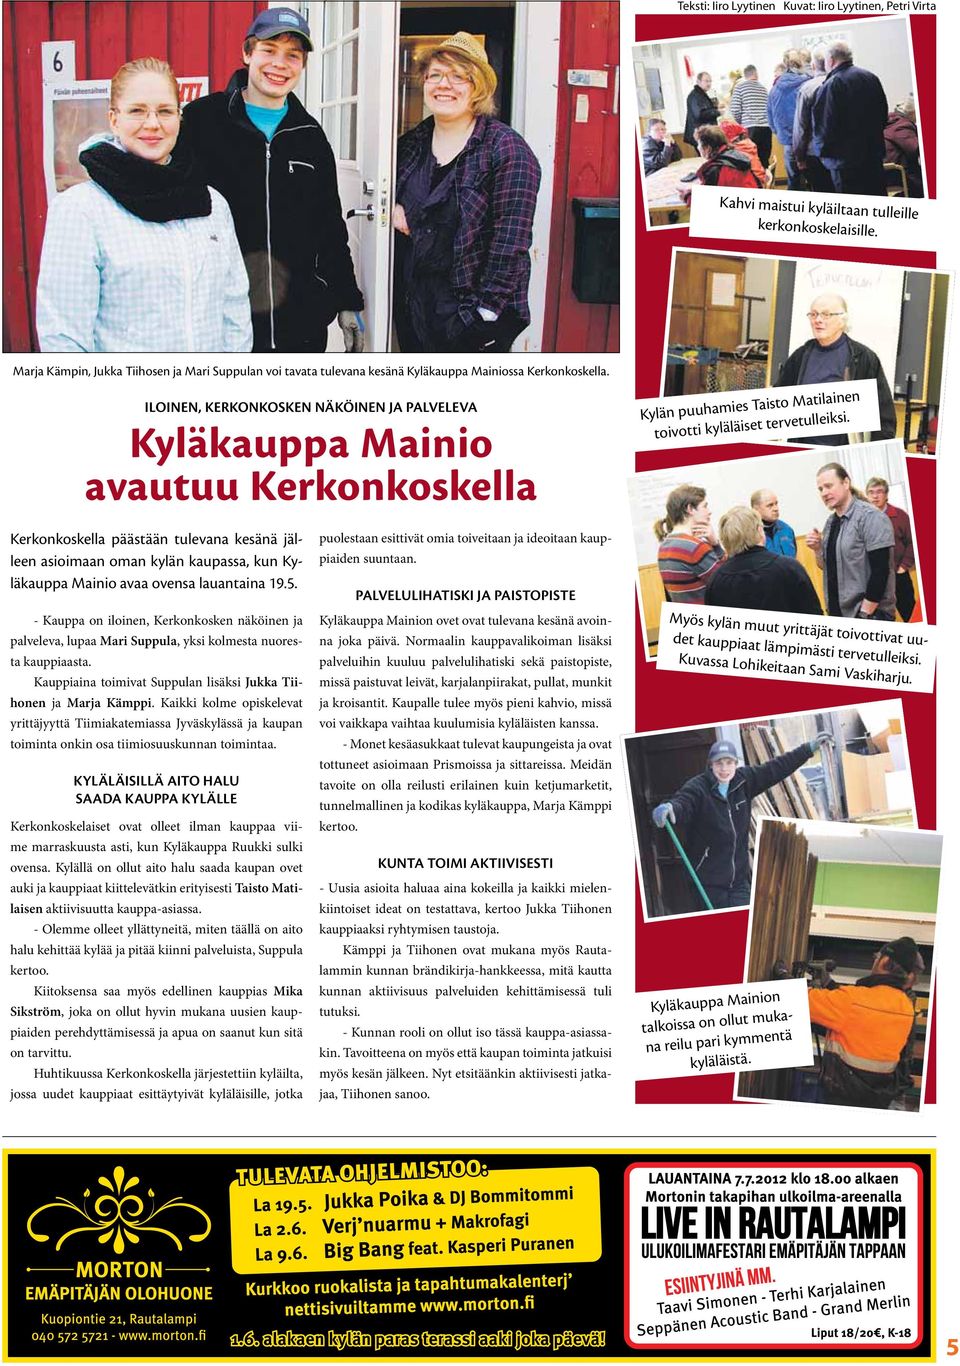 Iloinen, Kerkonkosken näköinen ja palveleva Kyläkauppa Mainio avautuu Kerkonkoskella Kylän puuhamies Taisto Matilainen toivotti kyläläiset tervetulleiksi.